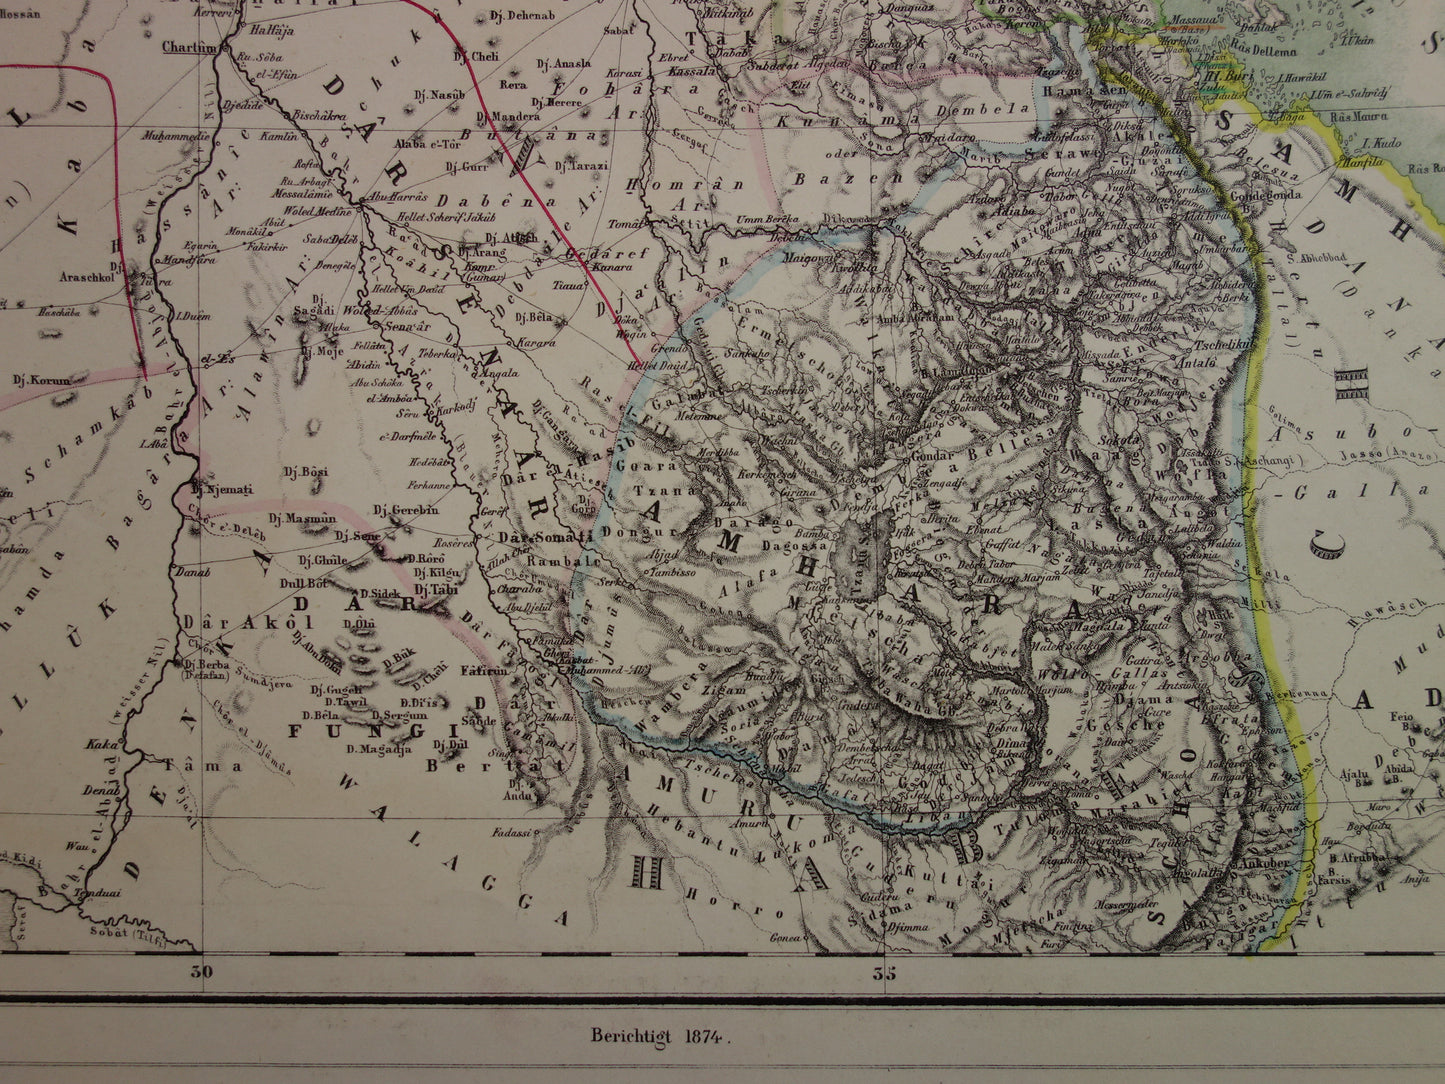 EGYPTE oude kaart van Rode Zee gebied Grote antieke landkaart Sudan, Djibouti, Ethiopië en Saoedi-Arabië met jaartal - vintage poster Afrika 1874